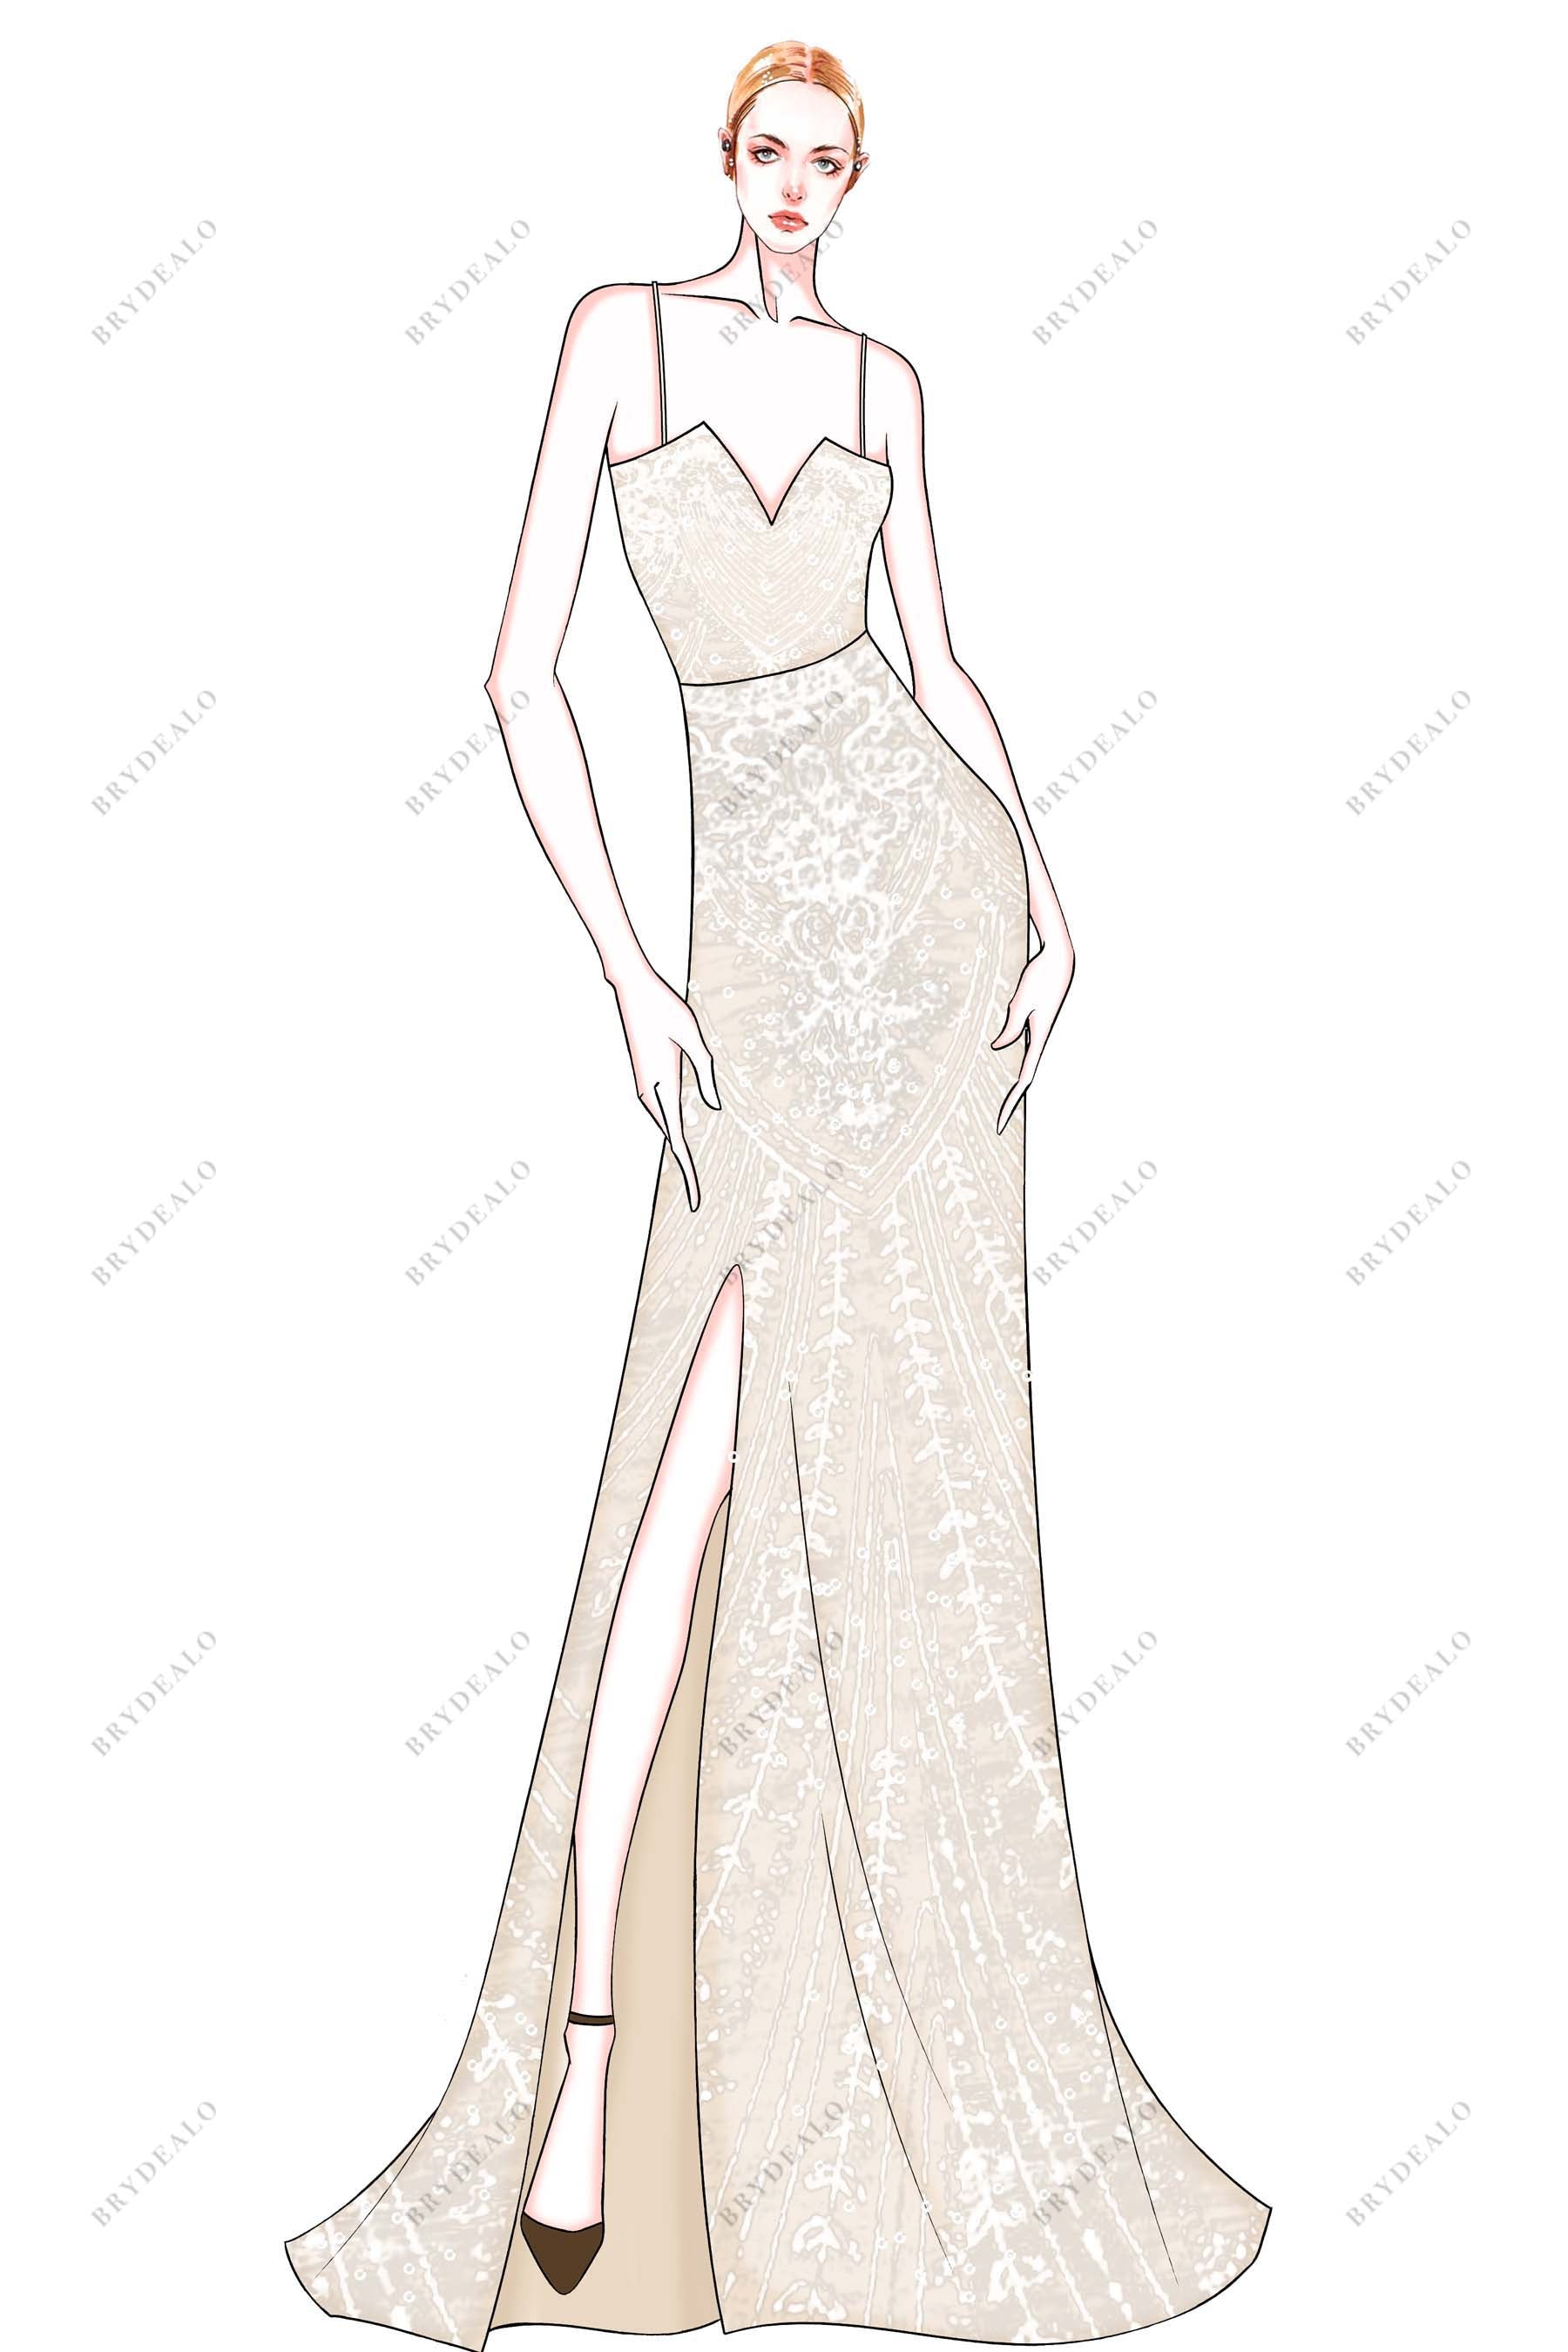 V-neck Thin Straps Slit Designer Wedding Dress Sketch